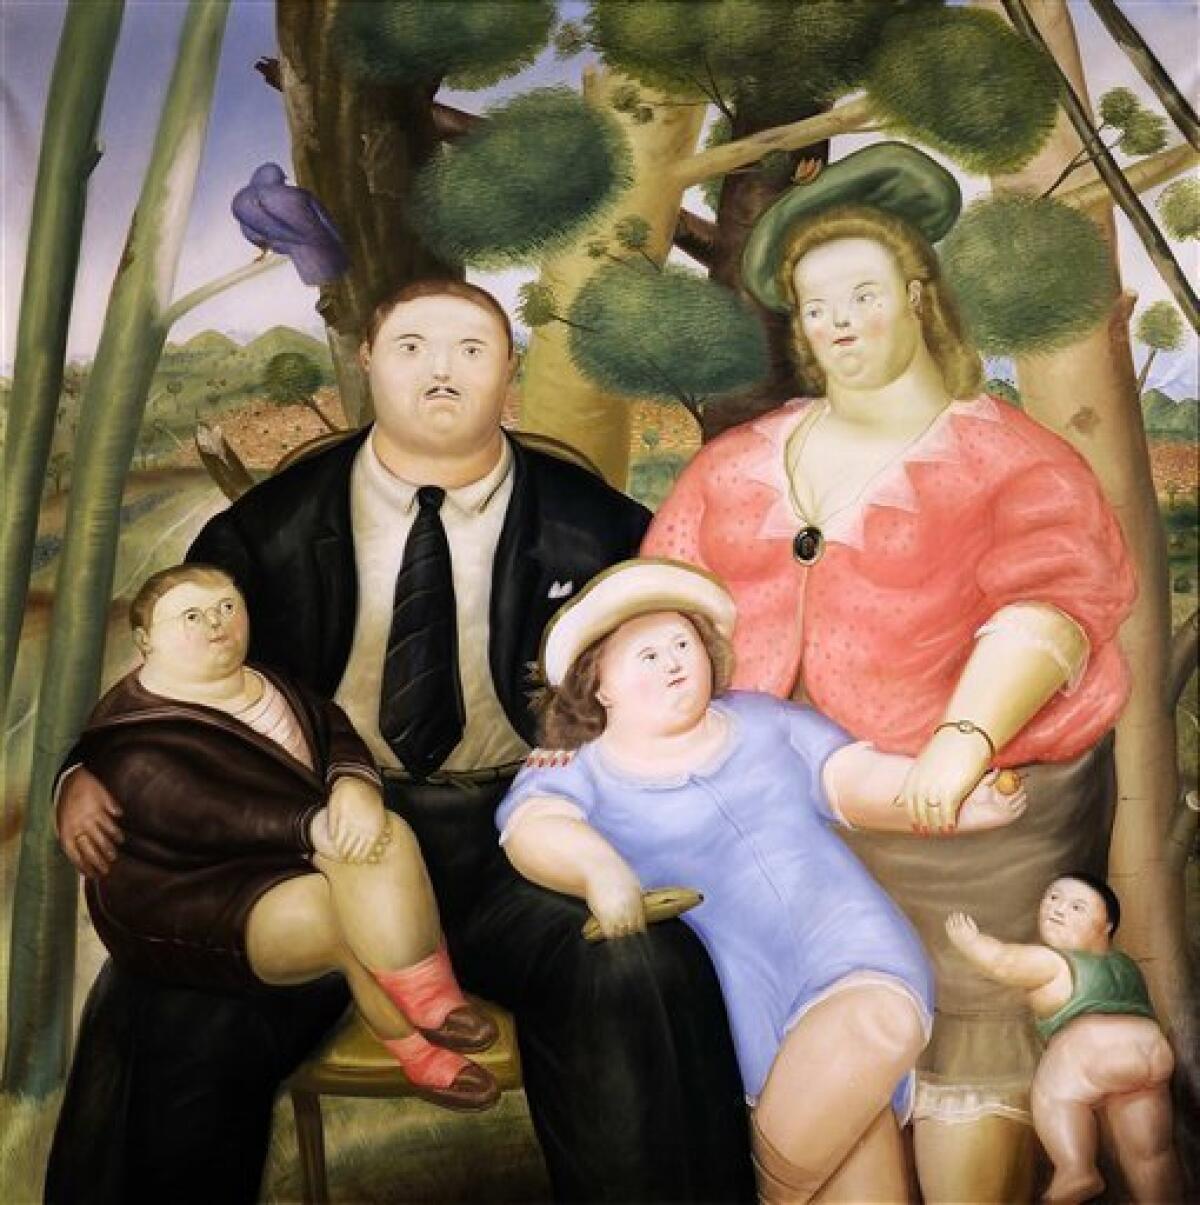 Una familia es una de las obras del artista colombiano Fernando Botero que fueron subastadas en Nueva York el miércoles 25 de mayo del 2011. Imagen distribuida por Sotheby's. (Foto AP/Sotheby's)